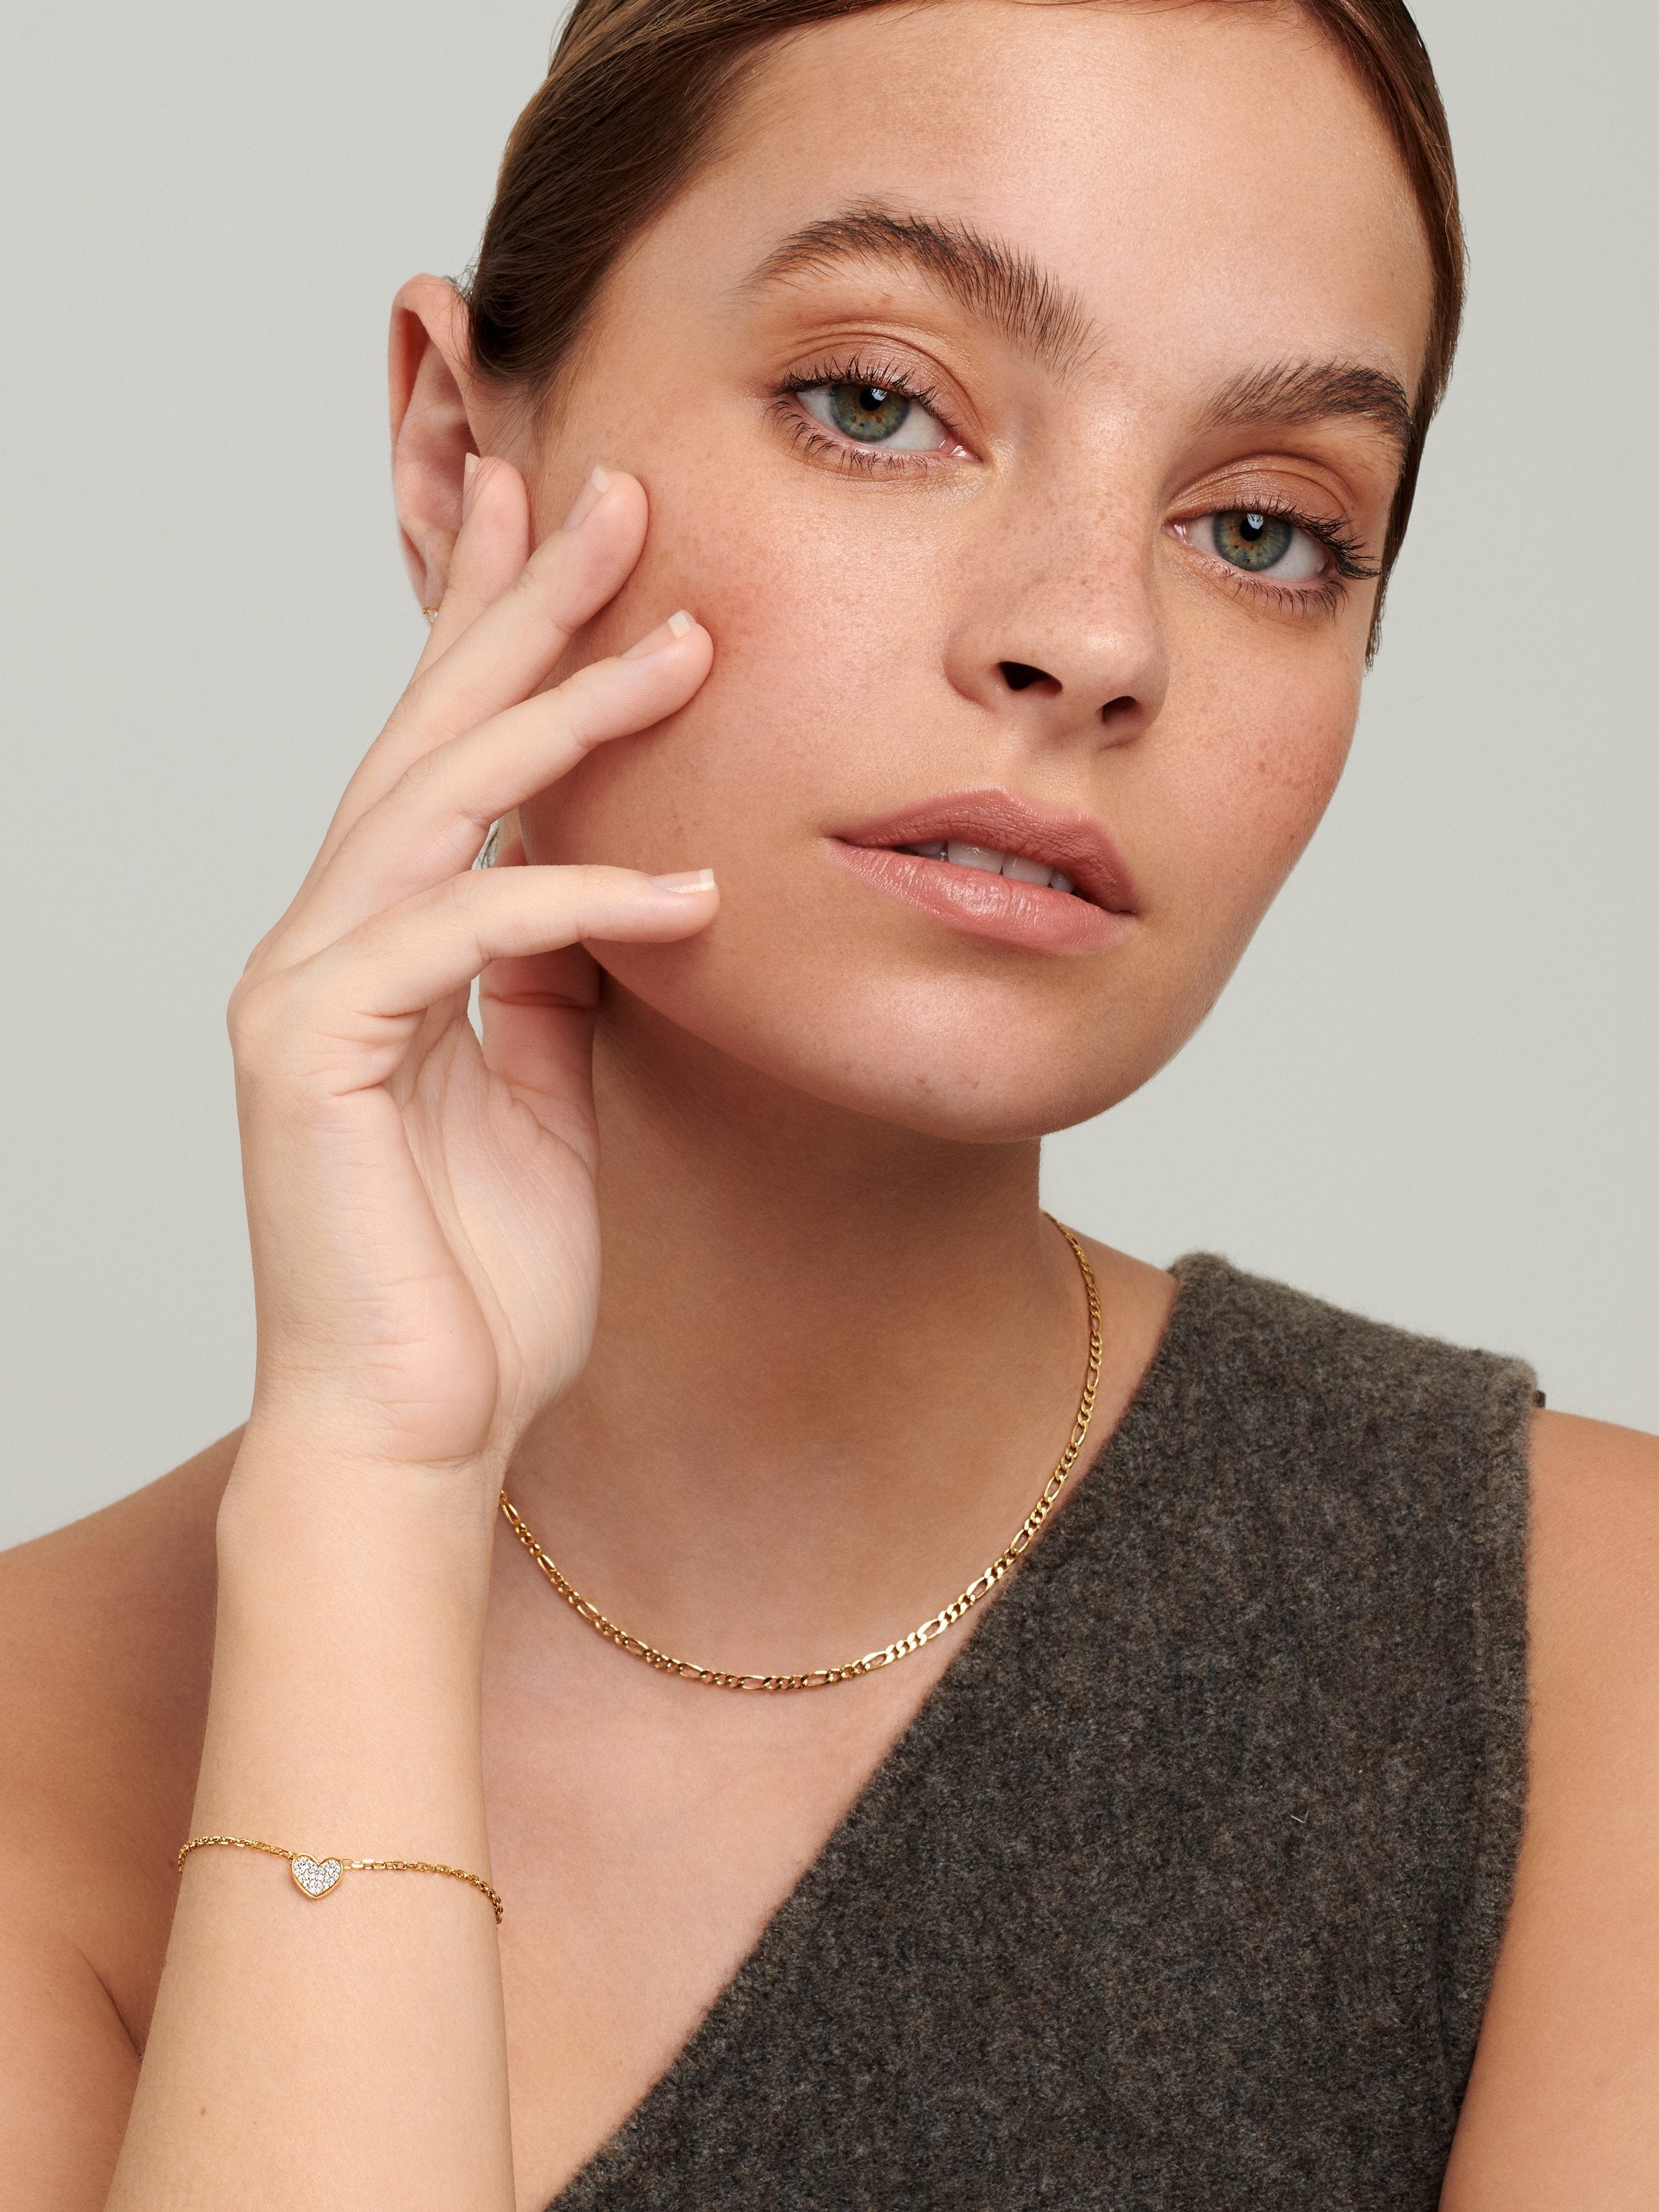 Female model wearing gold heart bracelet .